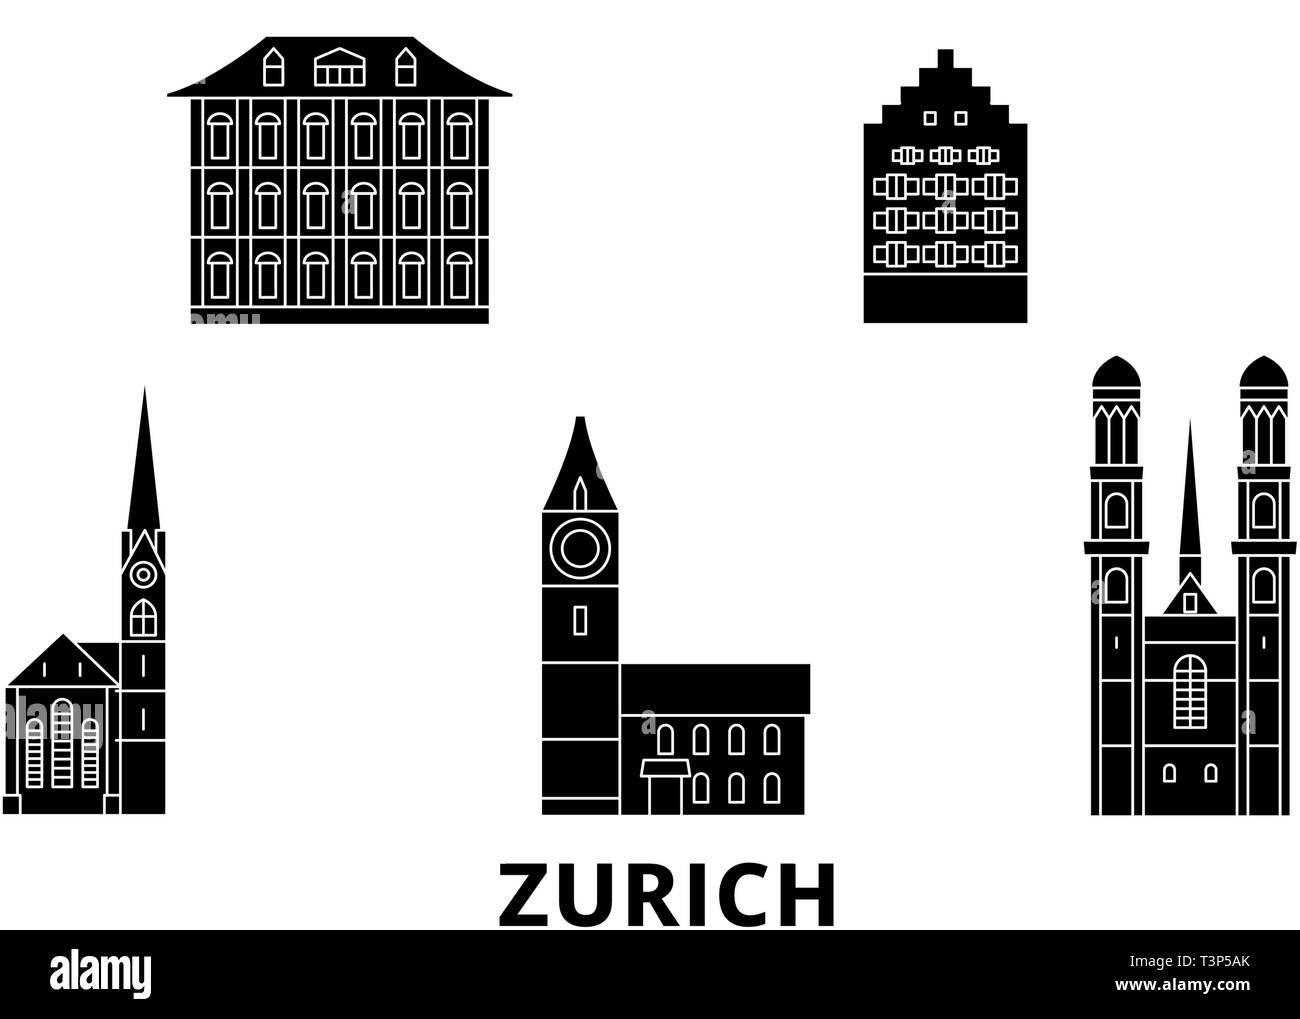 Switzerland, Zurich flat travel skyline set. Switzerland, Zurich black city vector illustration, symbol, travel sights, landmarks. Stock Vector